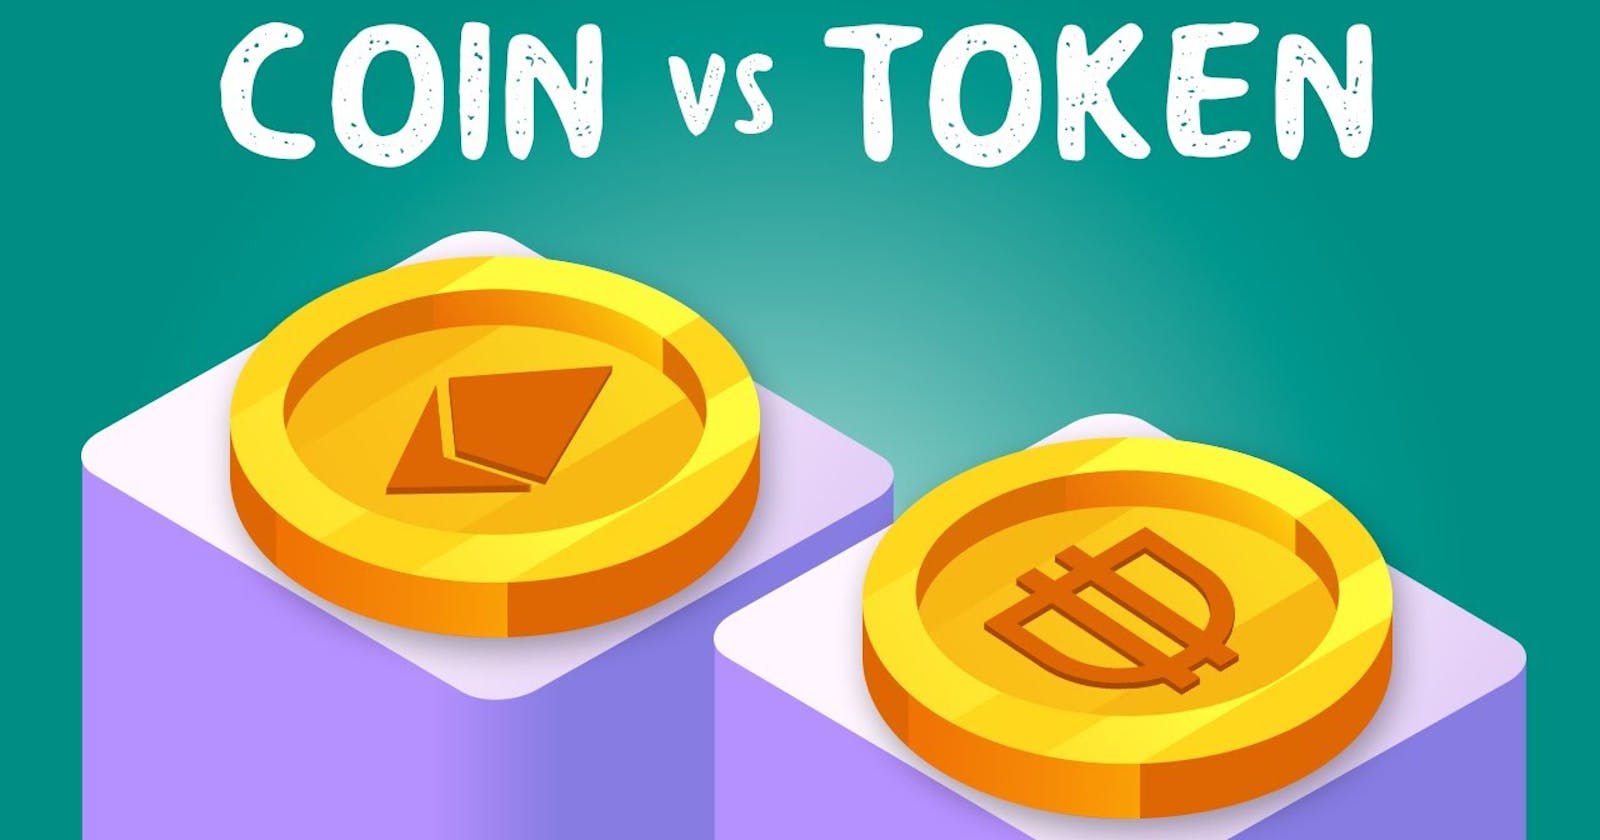 Coin vs Token on Blockchain